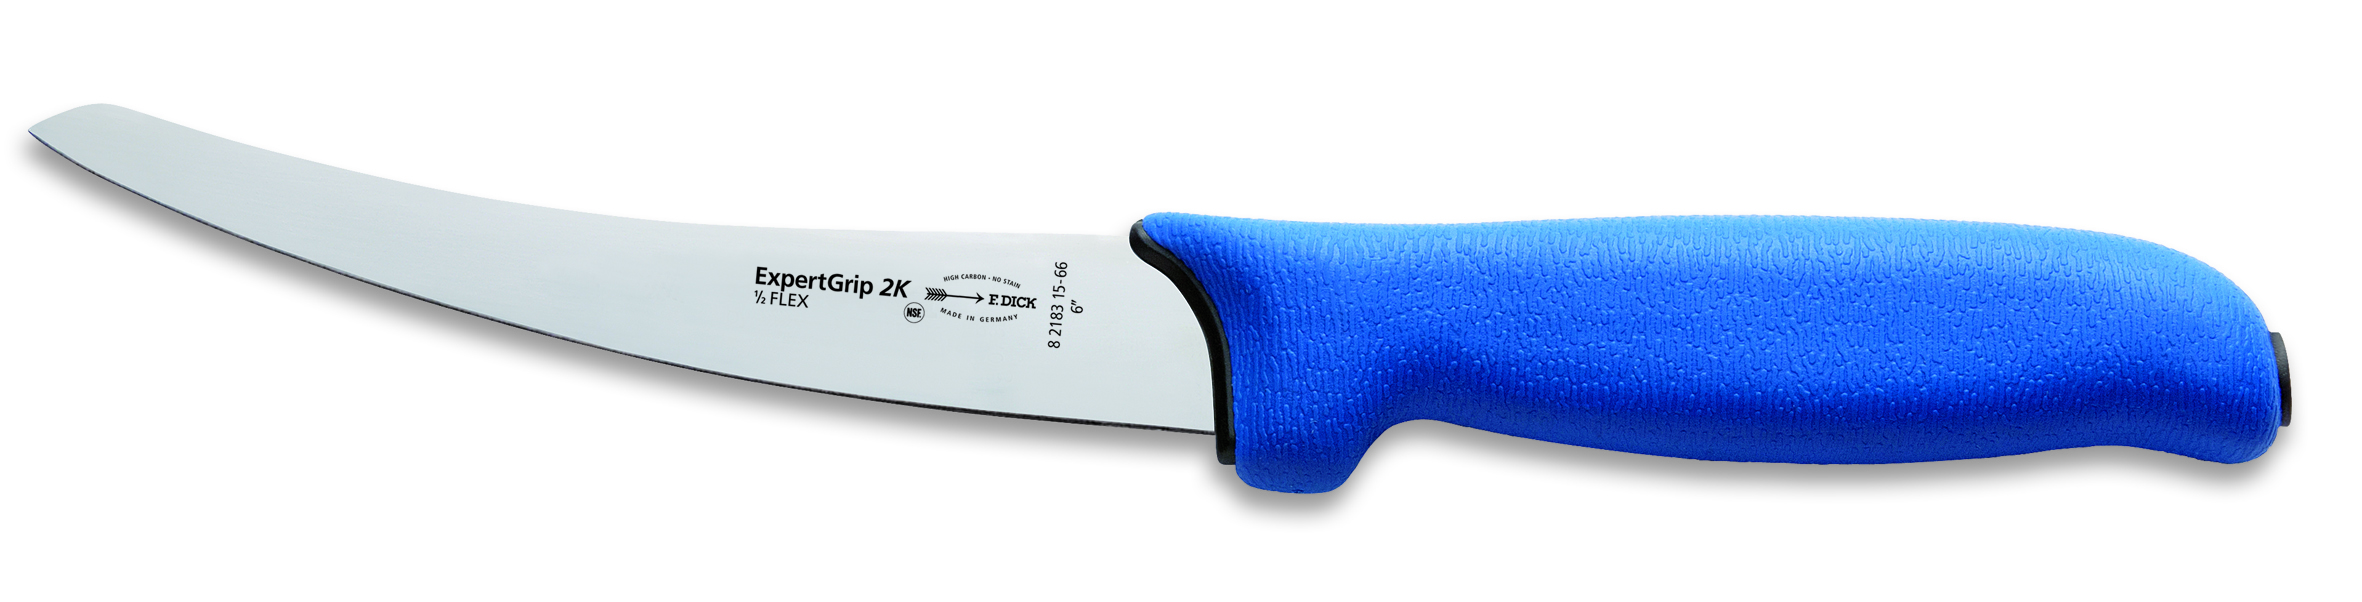 Filetovací nůž Dick poloflexibilní v délce 15 cm ze série ExpertGrip